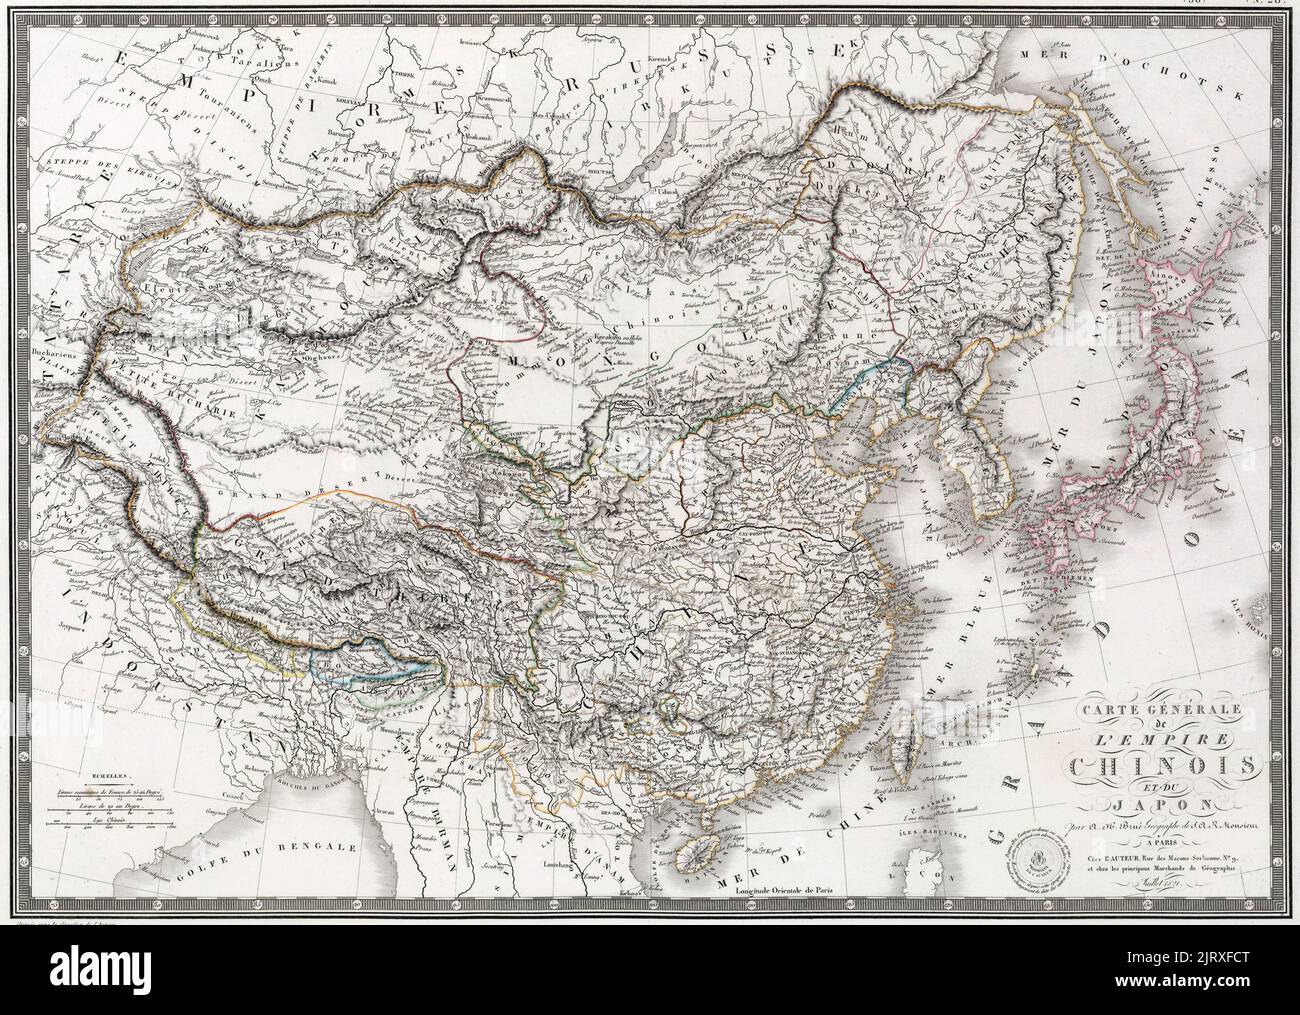 Mappa generale dell'Impero Cinese e del Giappone': Una mappa dell'Impero Qing e del Giappone pubblicata da J. Andriveau-Goujon a Parigi. Si noti il corso inferiore del Fiume giallo prima delle alluvioni del 1850s, circa 1821 Foto Stock